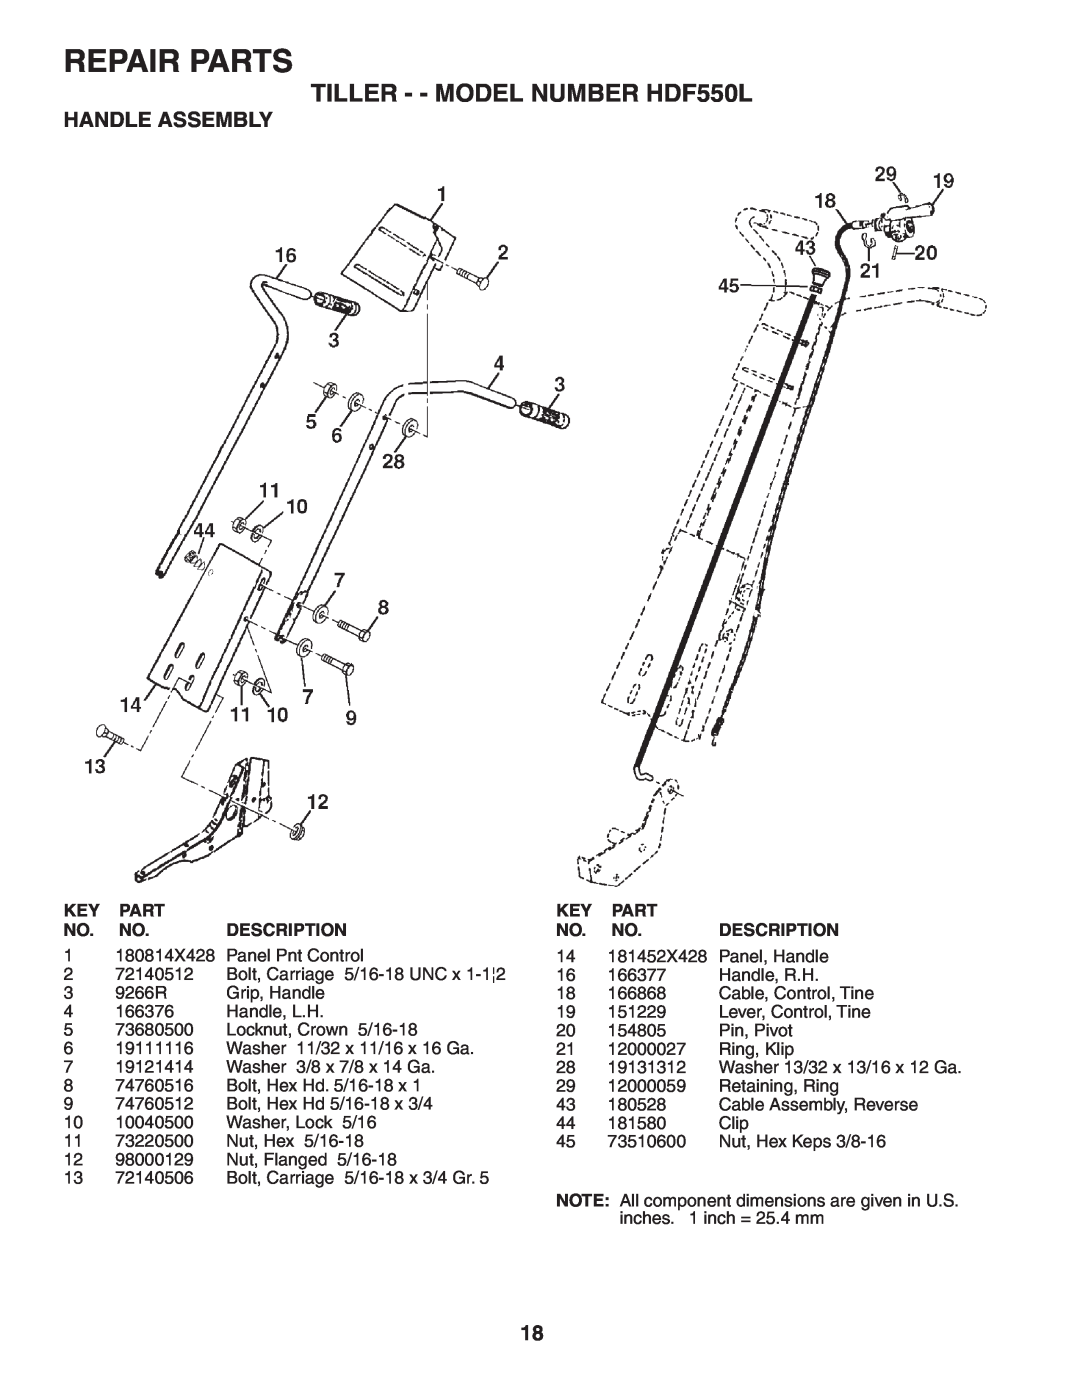 Poulan owner manual Repair Parts, TILLER - - MODEL NUMBER HDF550L, Handle Assembly, Description 